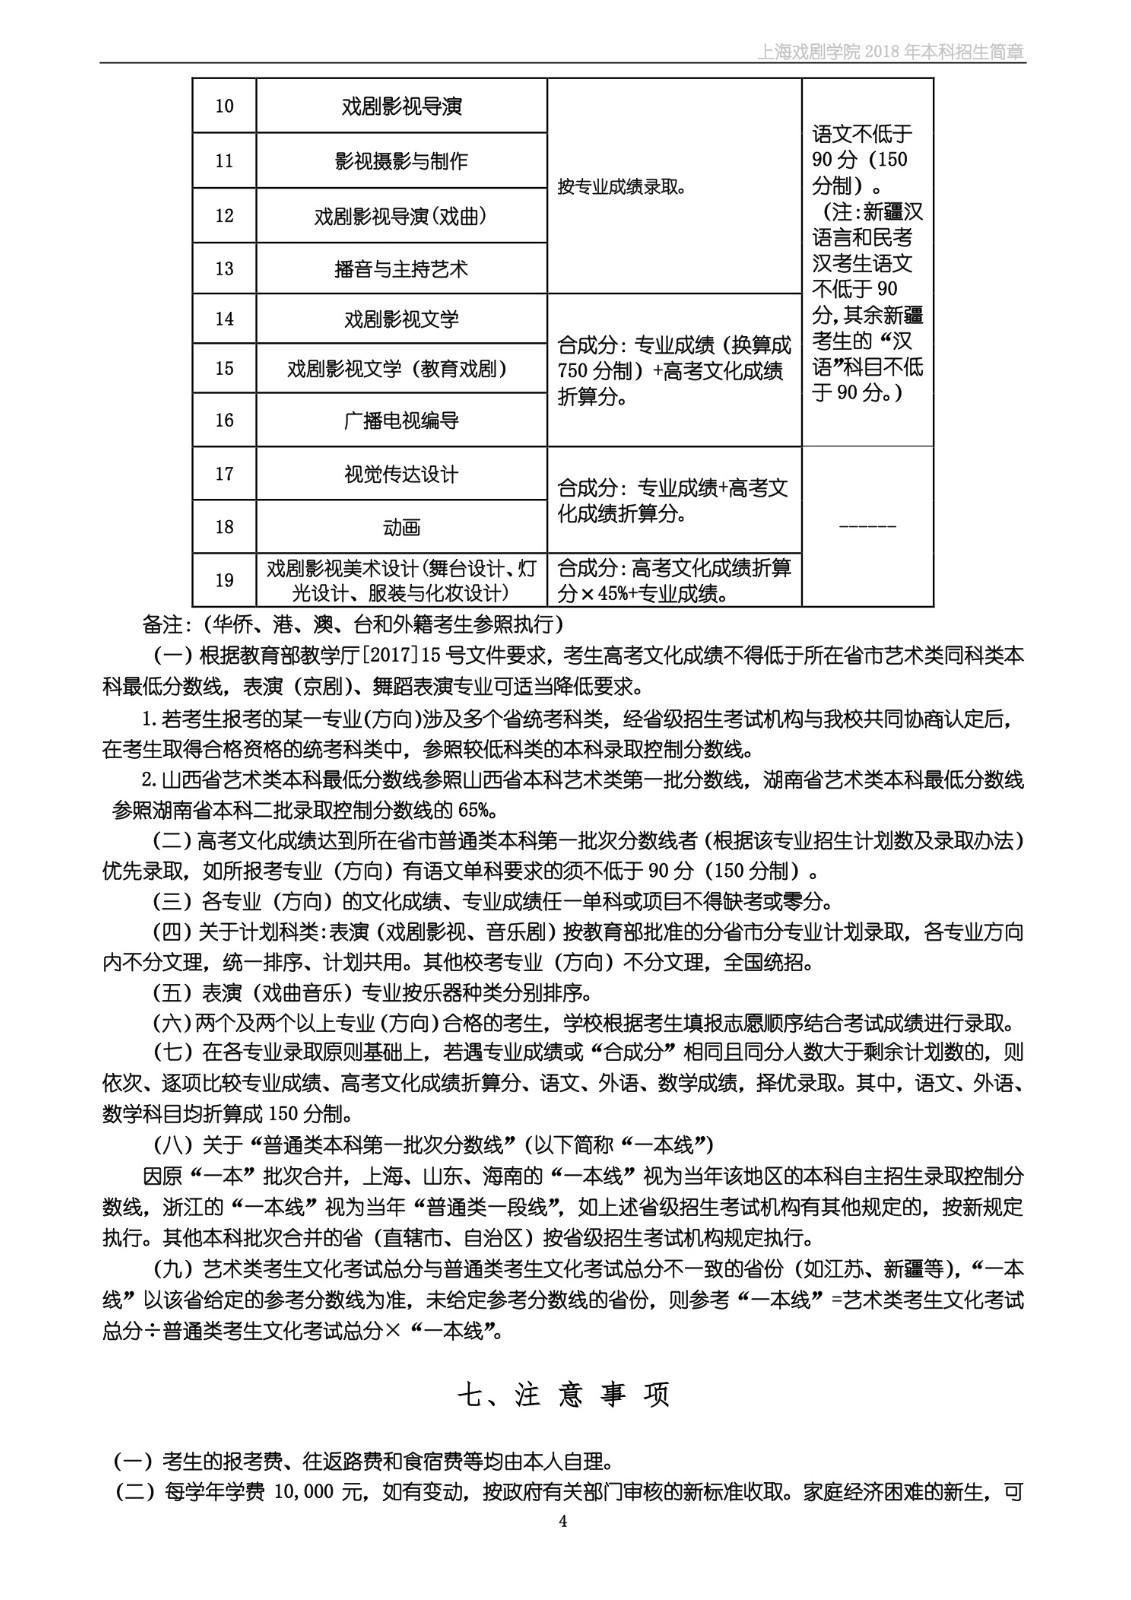 上海戏剧学院2018年本科招生简章-page4.jpeg